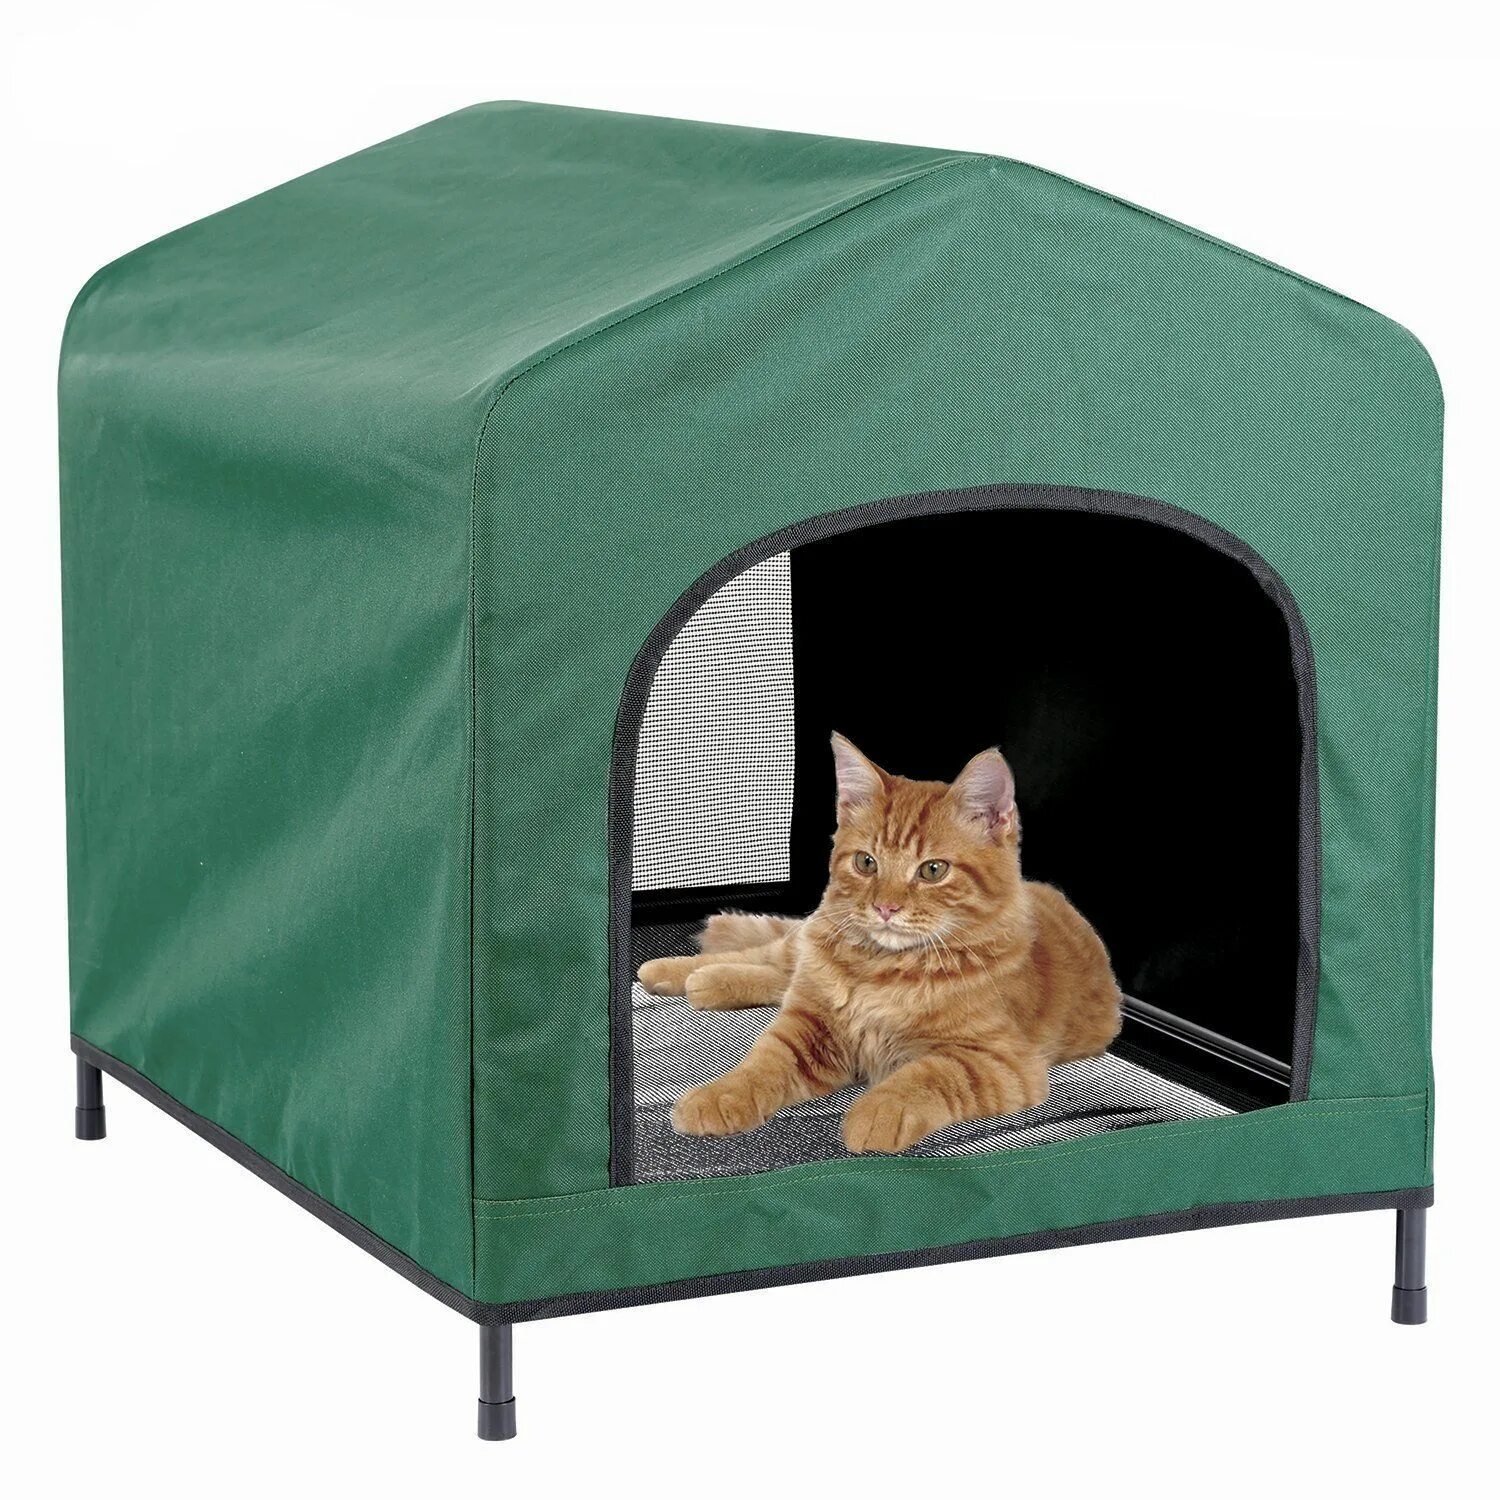 Pet дом. Палатка для кошек. Дом палатка для кошек. Шатер для кошек. Домик для кошки шатер.